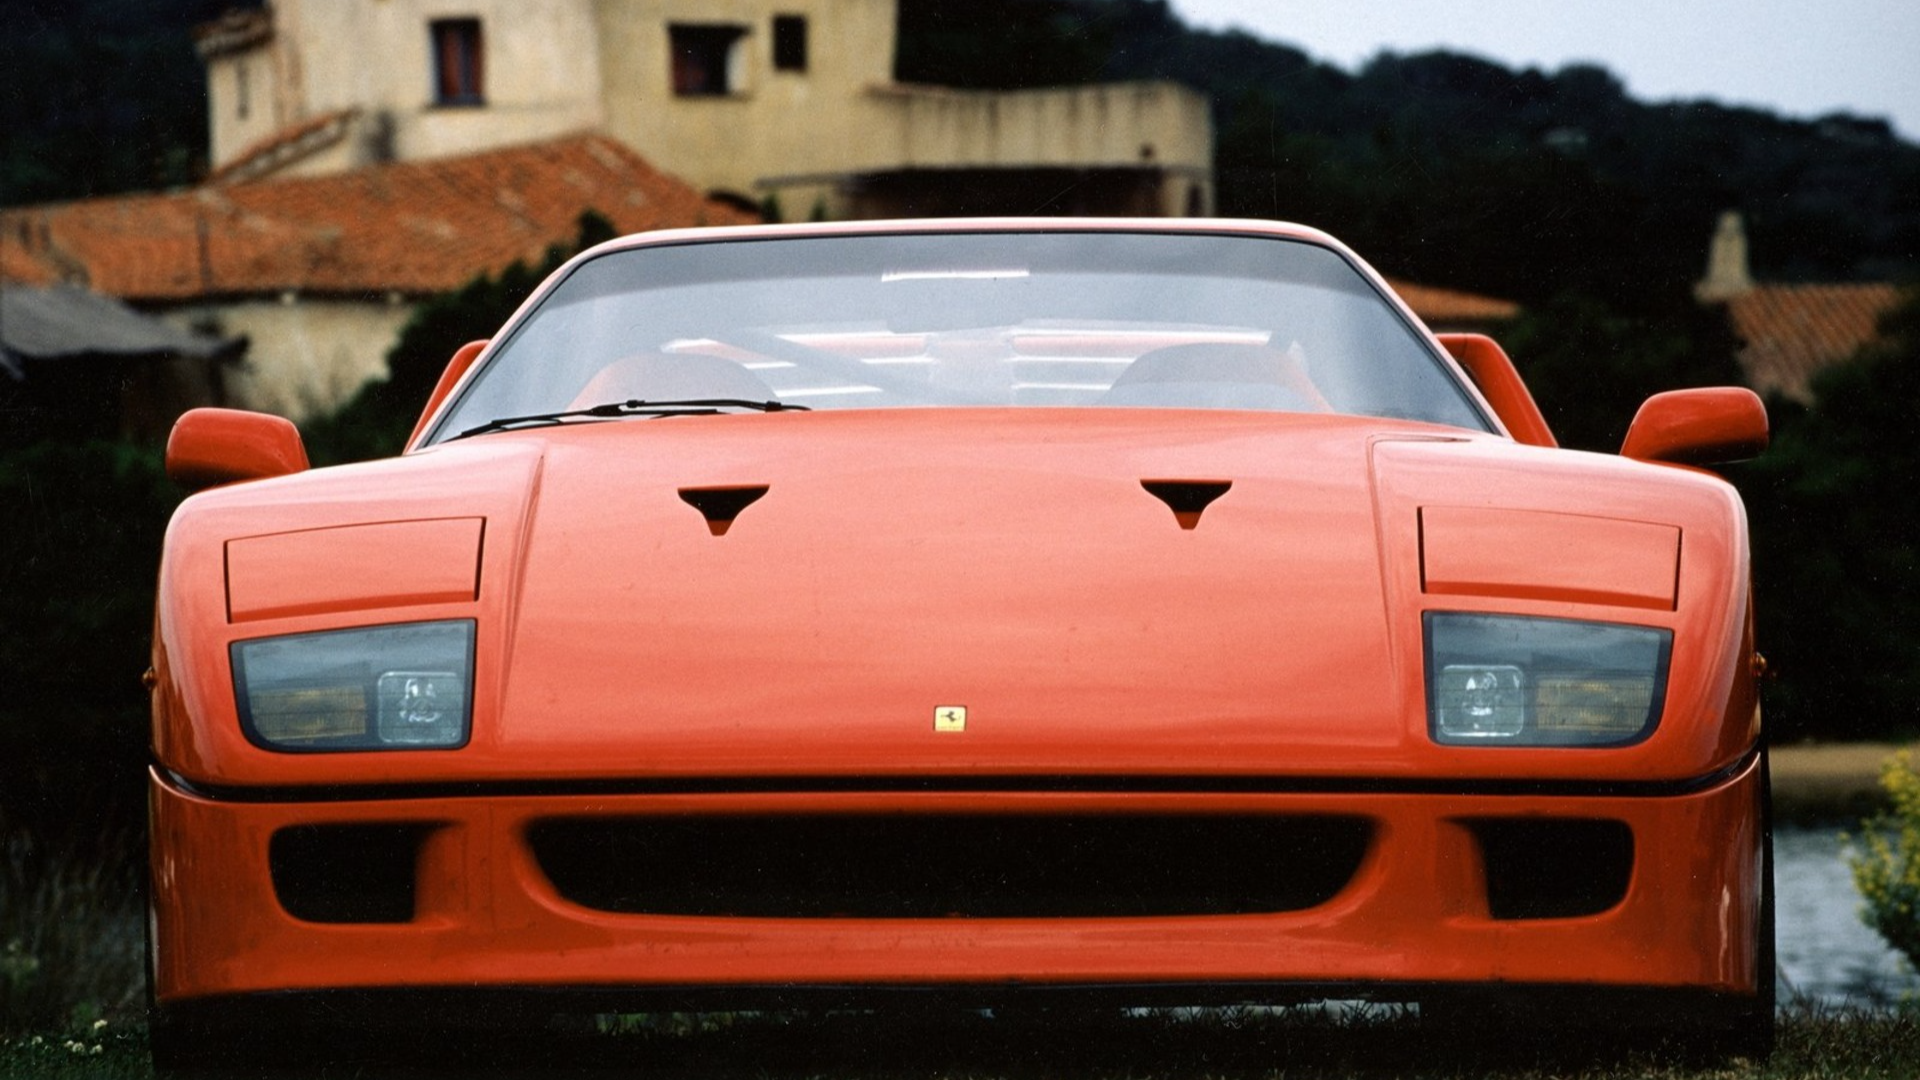 1987 Ferrari F40 red supercar